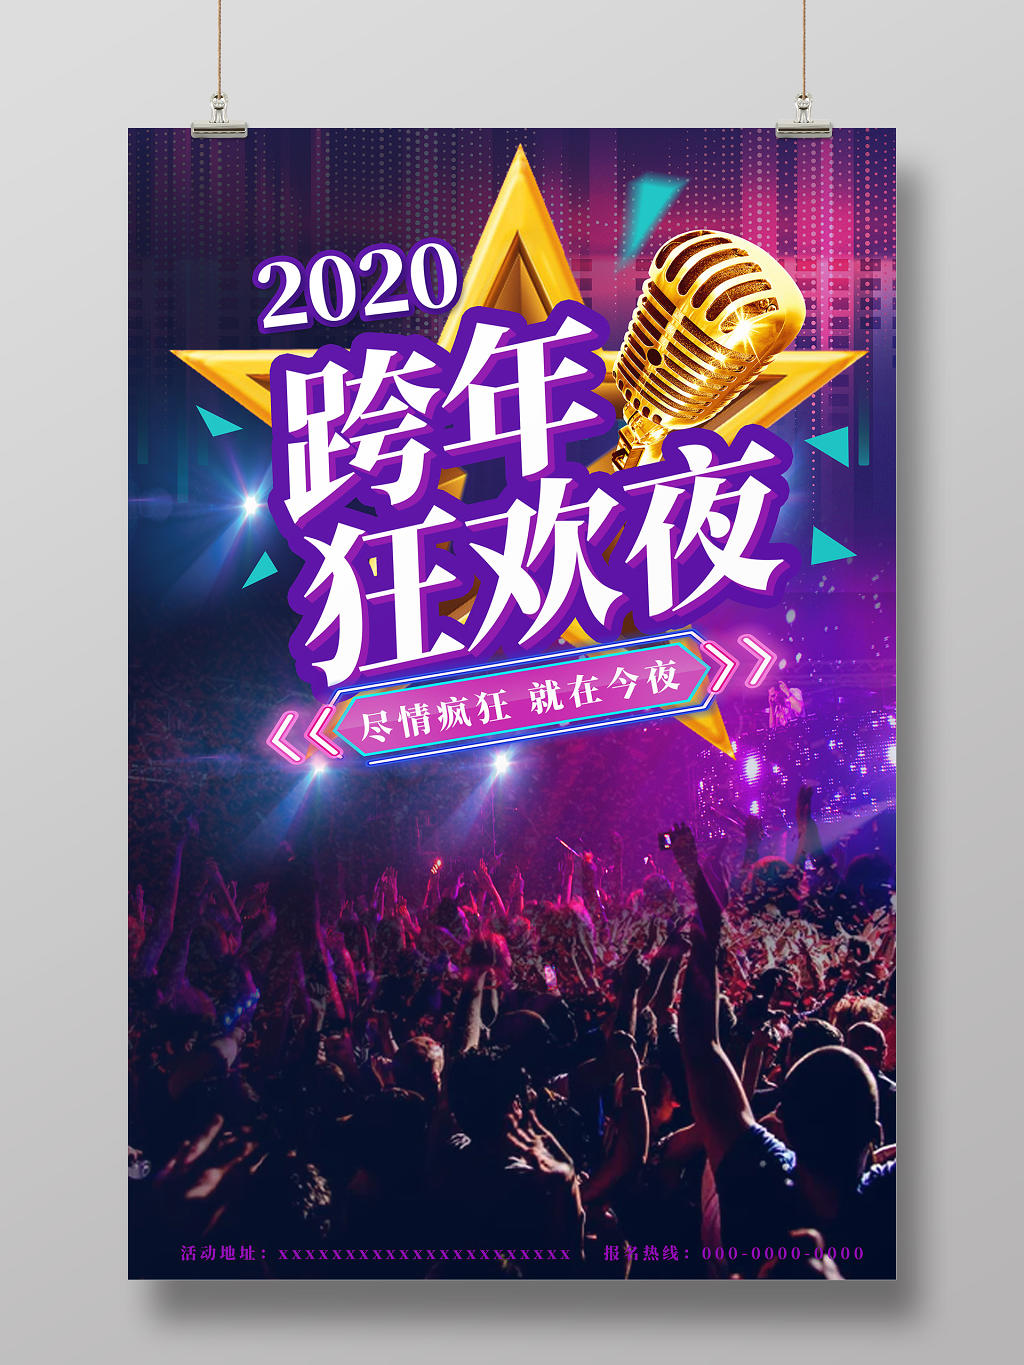 彩色大气2020跨年狂欢夜话筒发光海报